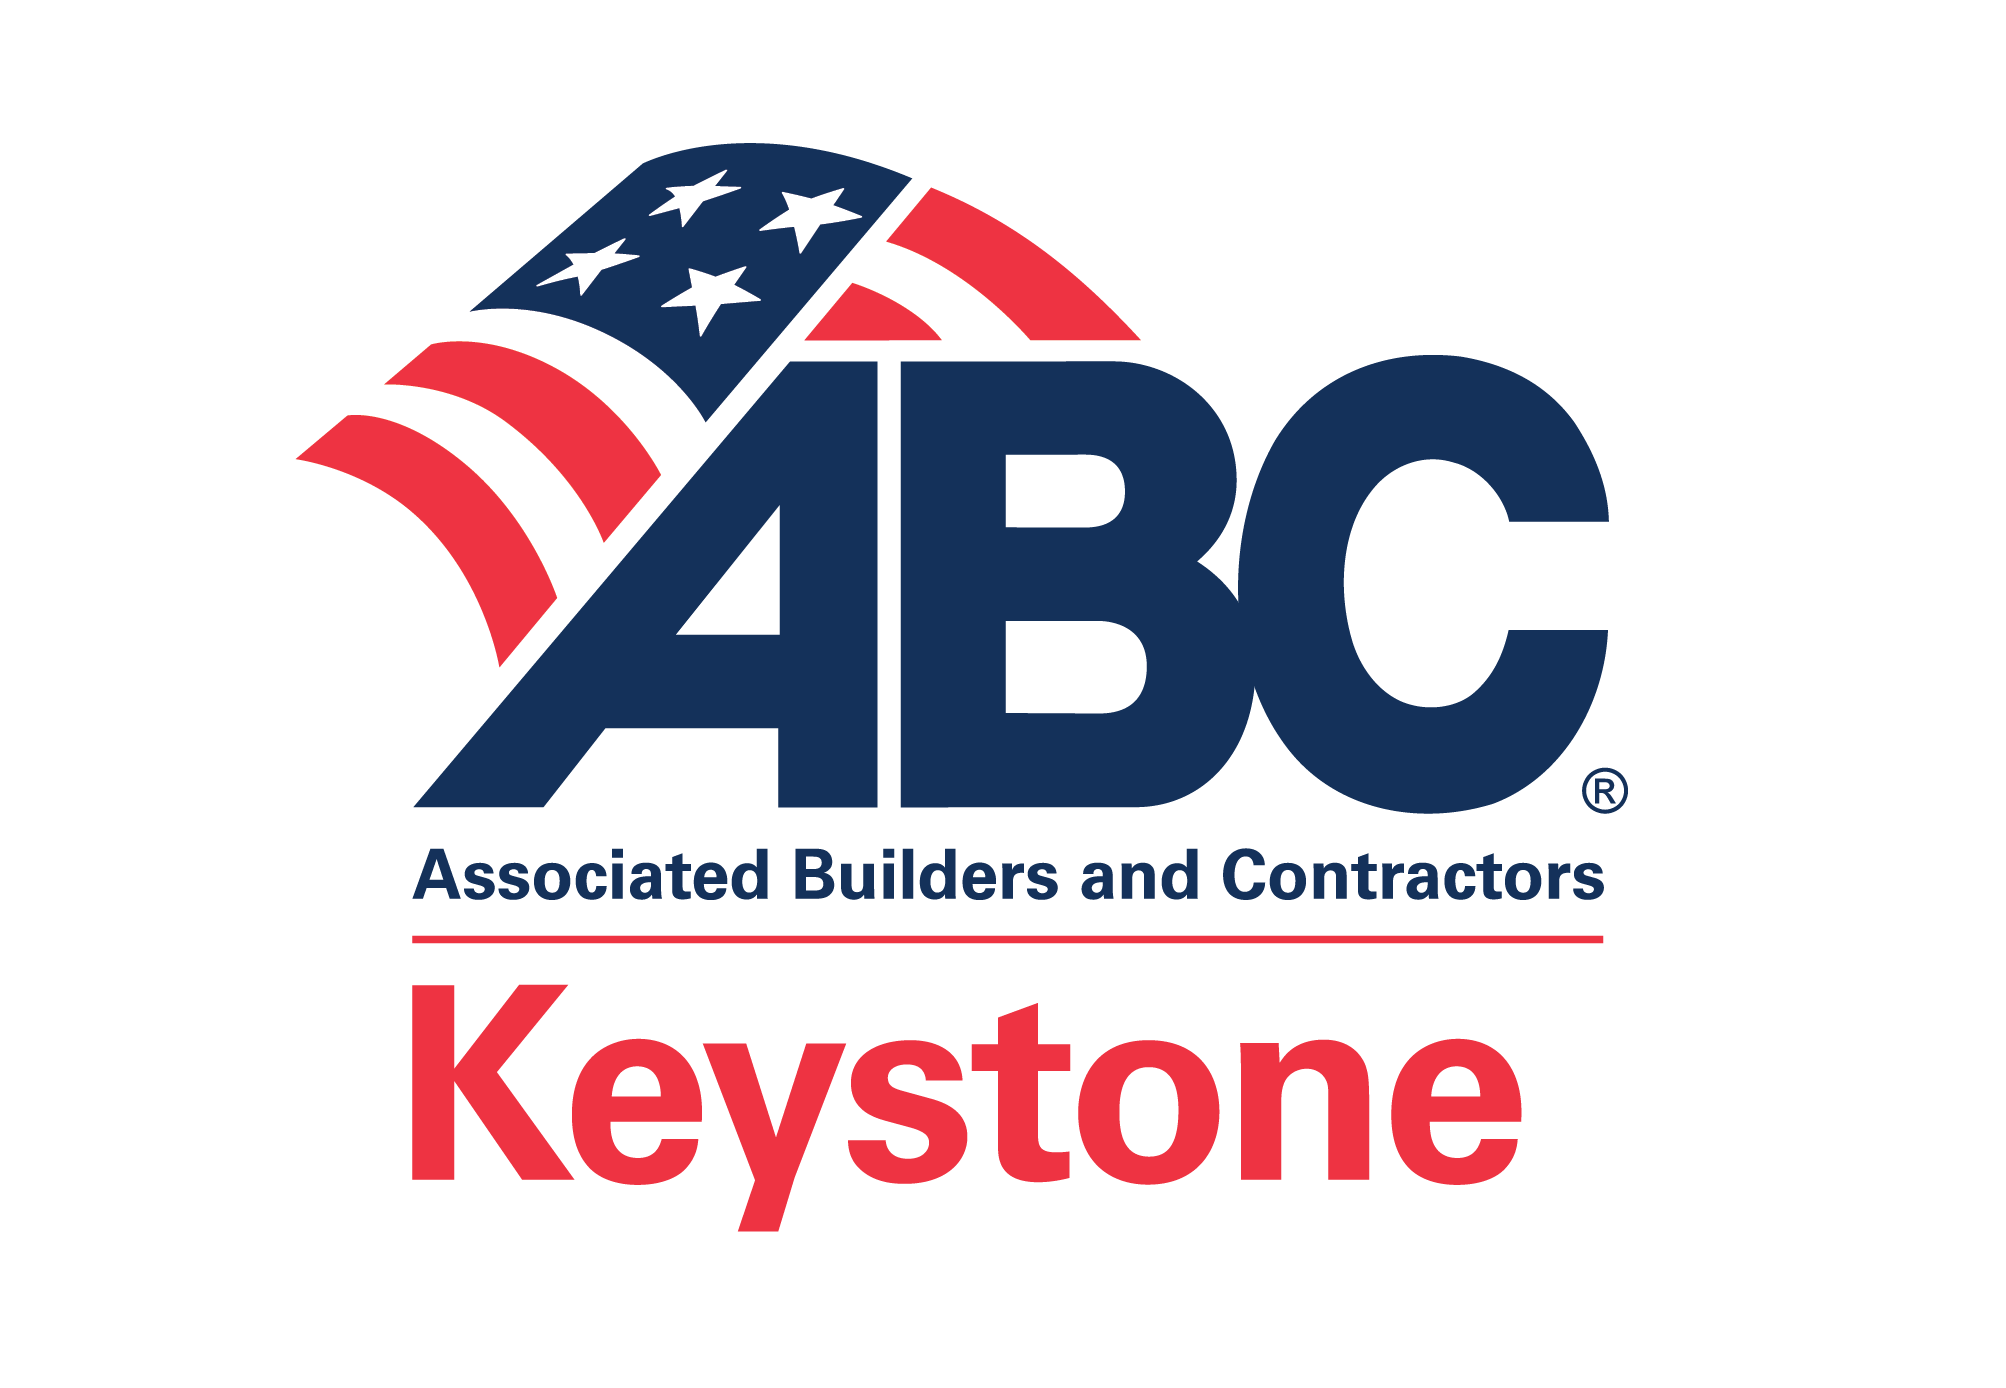 ABC Keystone